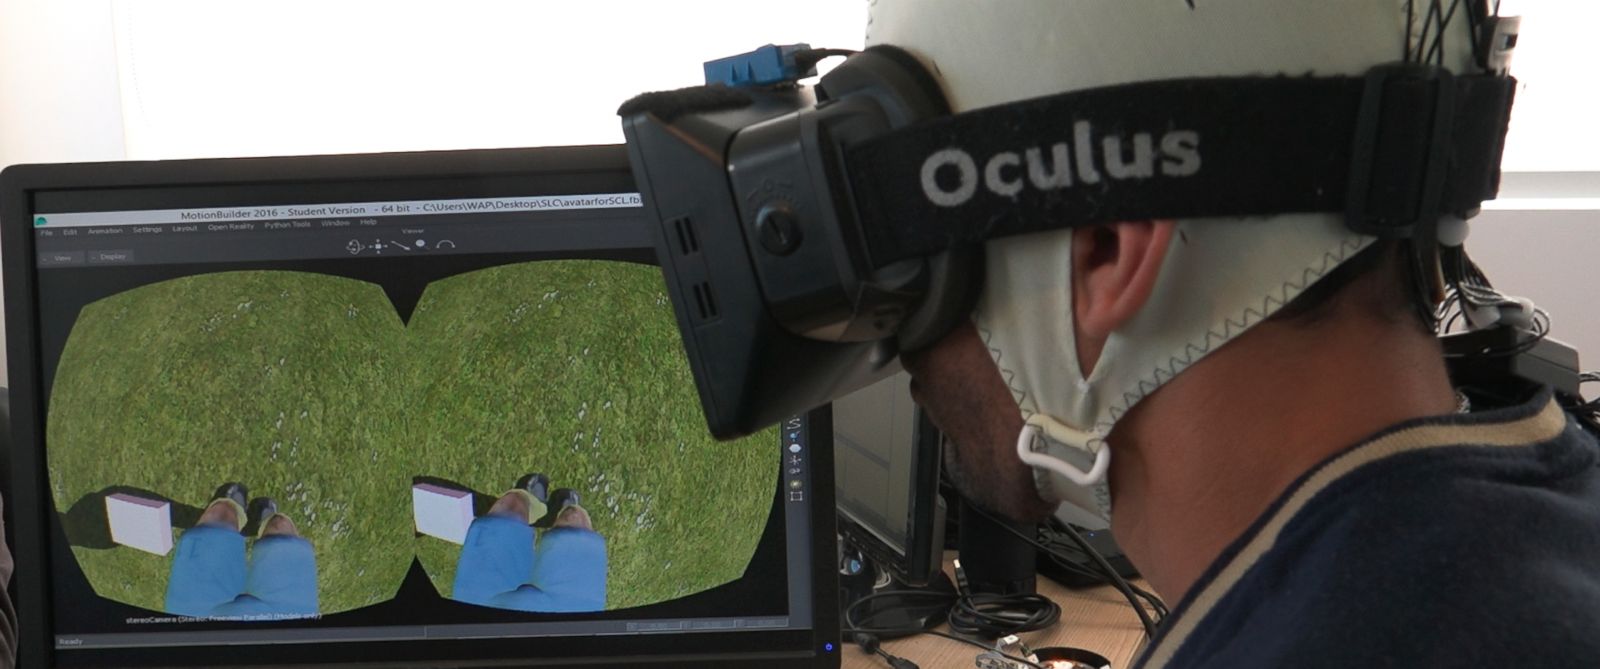 BCI + VR helps paraplegics regain sensation, muscle control